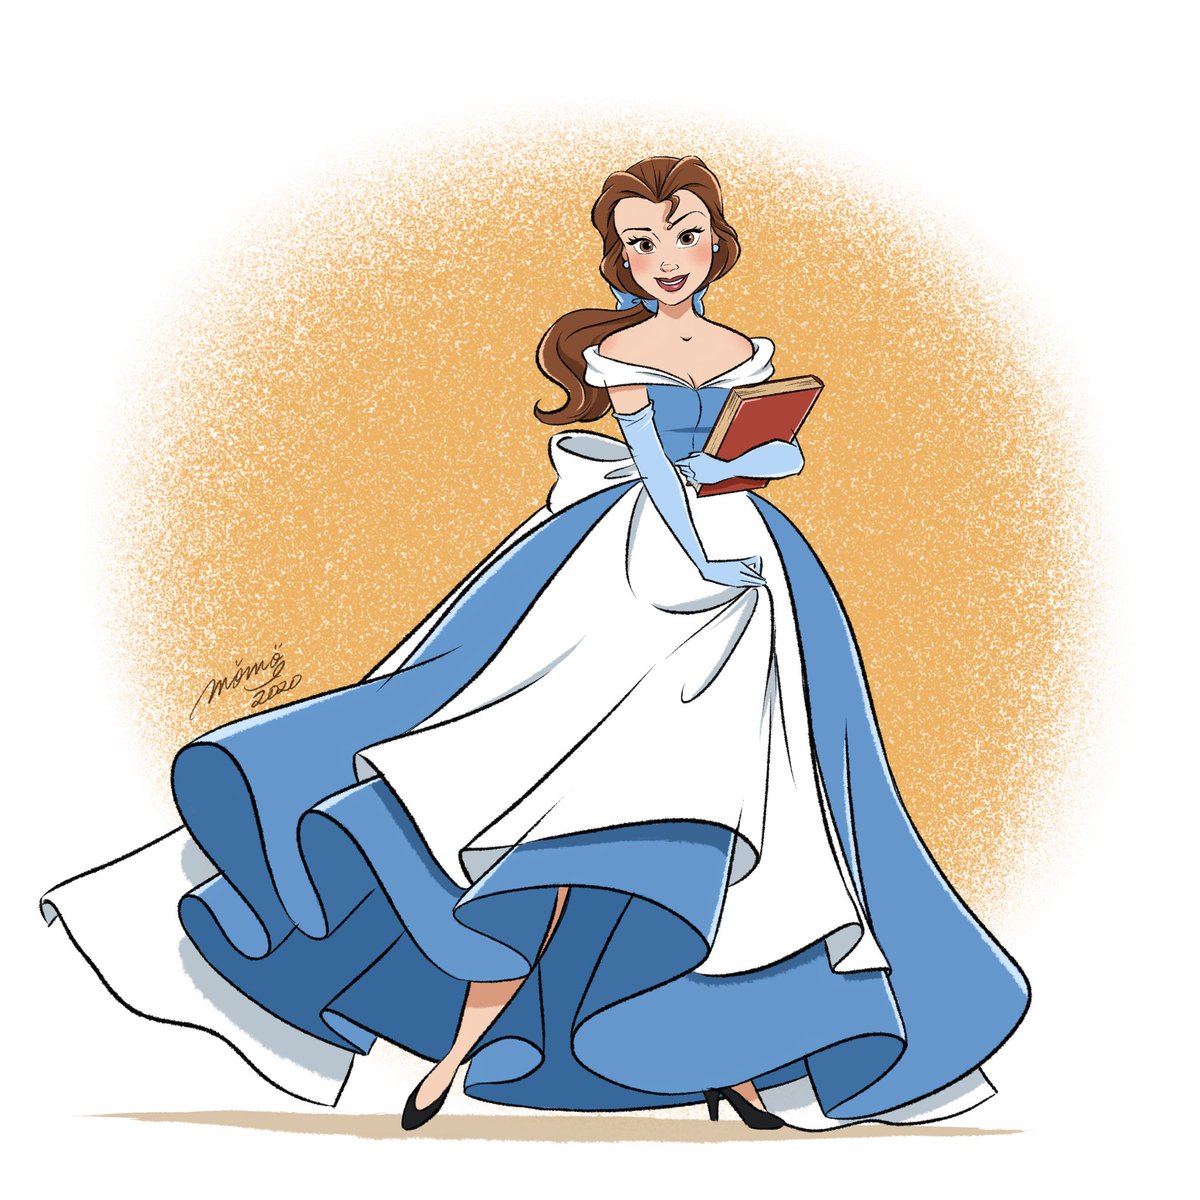 Duckymomo プリンセスになる前の衣装をイメージしたドレスを描いてみました Disney Disneyprincess Belle Cinderella ディズニープリンセス ベル シンデレラ ドレス T Co Fqbultpfla Twitter